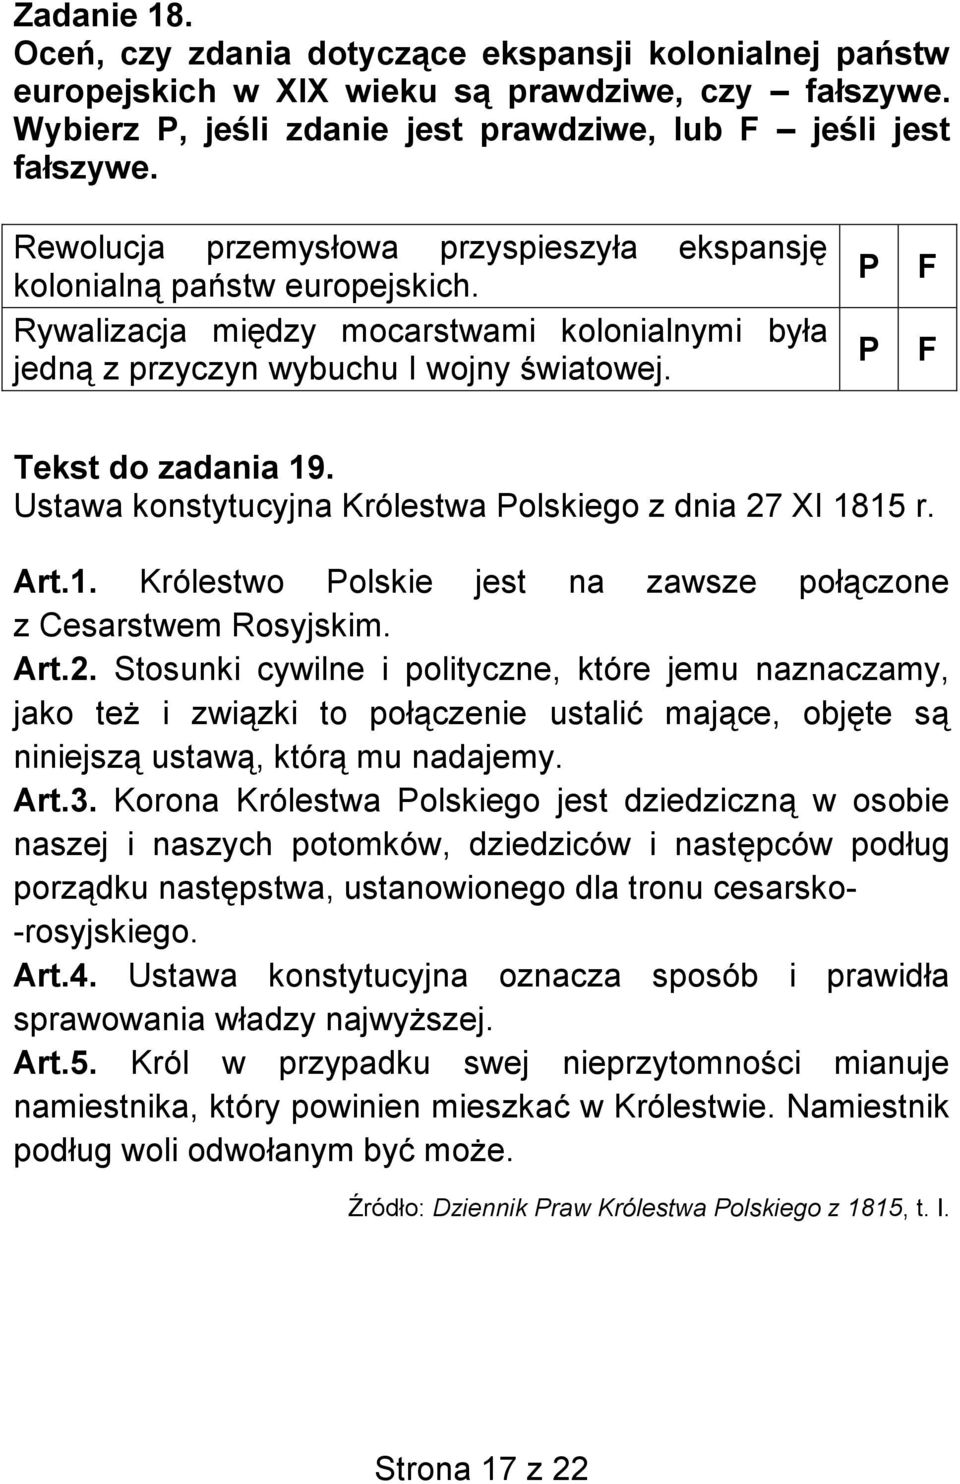 Ustawa konstytucyjna Królestwa Polskiego z dnia 27 XI 1815 r. Art.1. Królestwo Polskie jest na zawsze połączone z Cesarstwem Rosyjskim. Art.2. Stosunki cywilne i polityczne, które jemu naznaczamy, jako też i związki to połączenie ustalić mające, objęte są niniejszą ustawą, którą mu nadajemy.